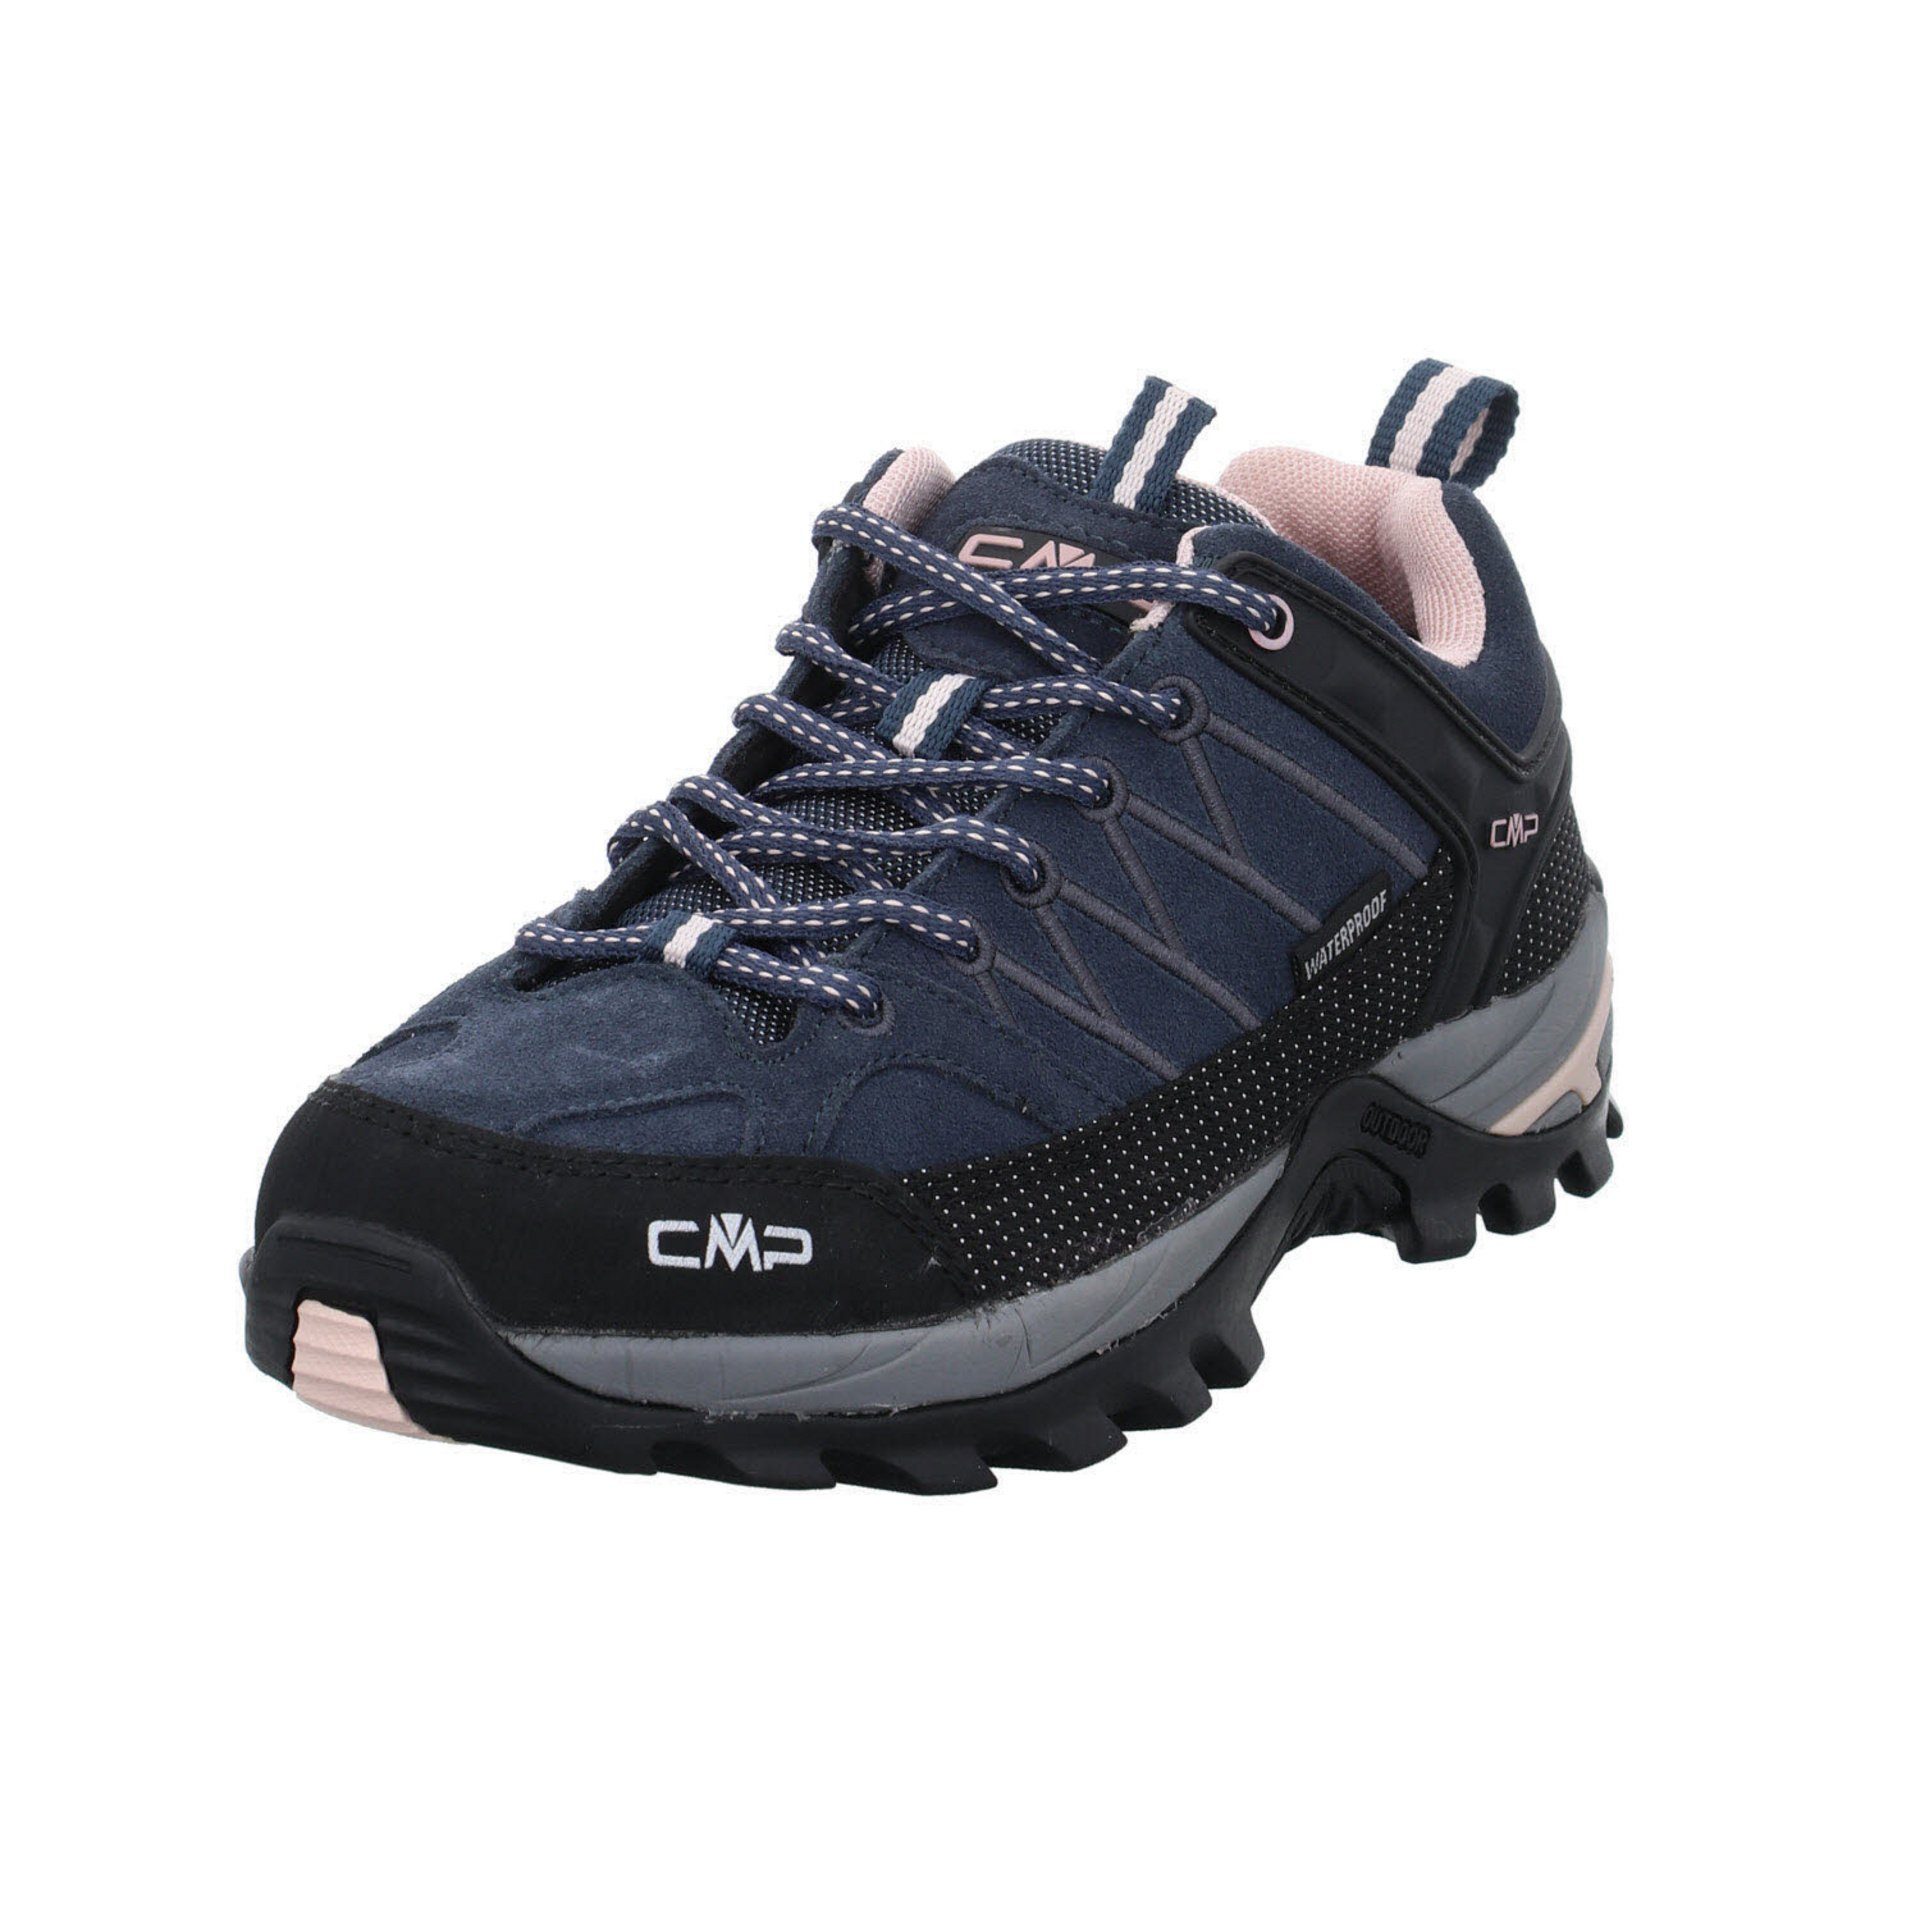 Schuhe Leder-/Textilkombination Low Damen ASPHALT-ANTRACITE-ROSE Outdoorschuh Outdoorschuh 53UG Riegel Outdoor CMP